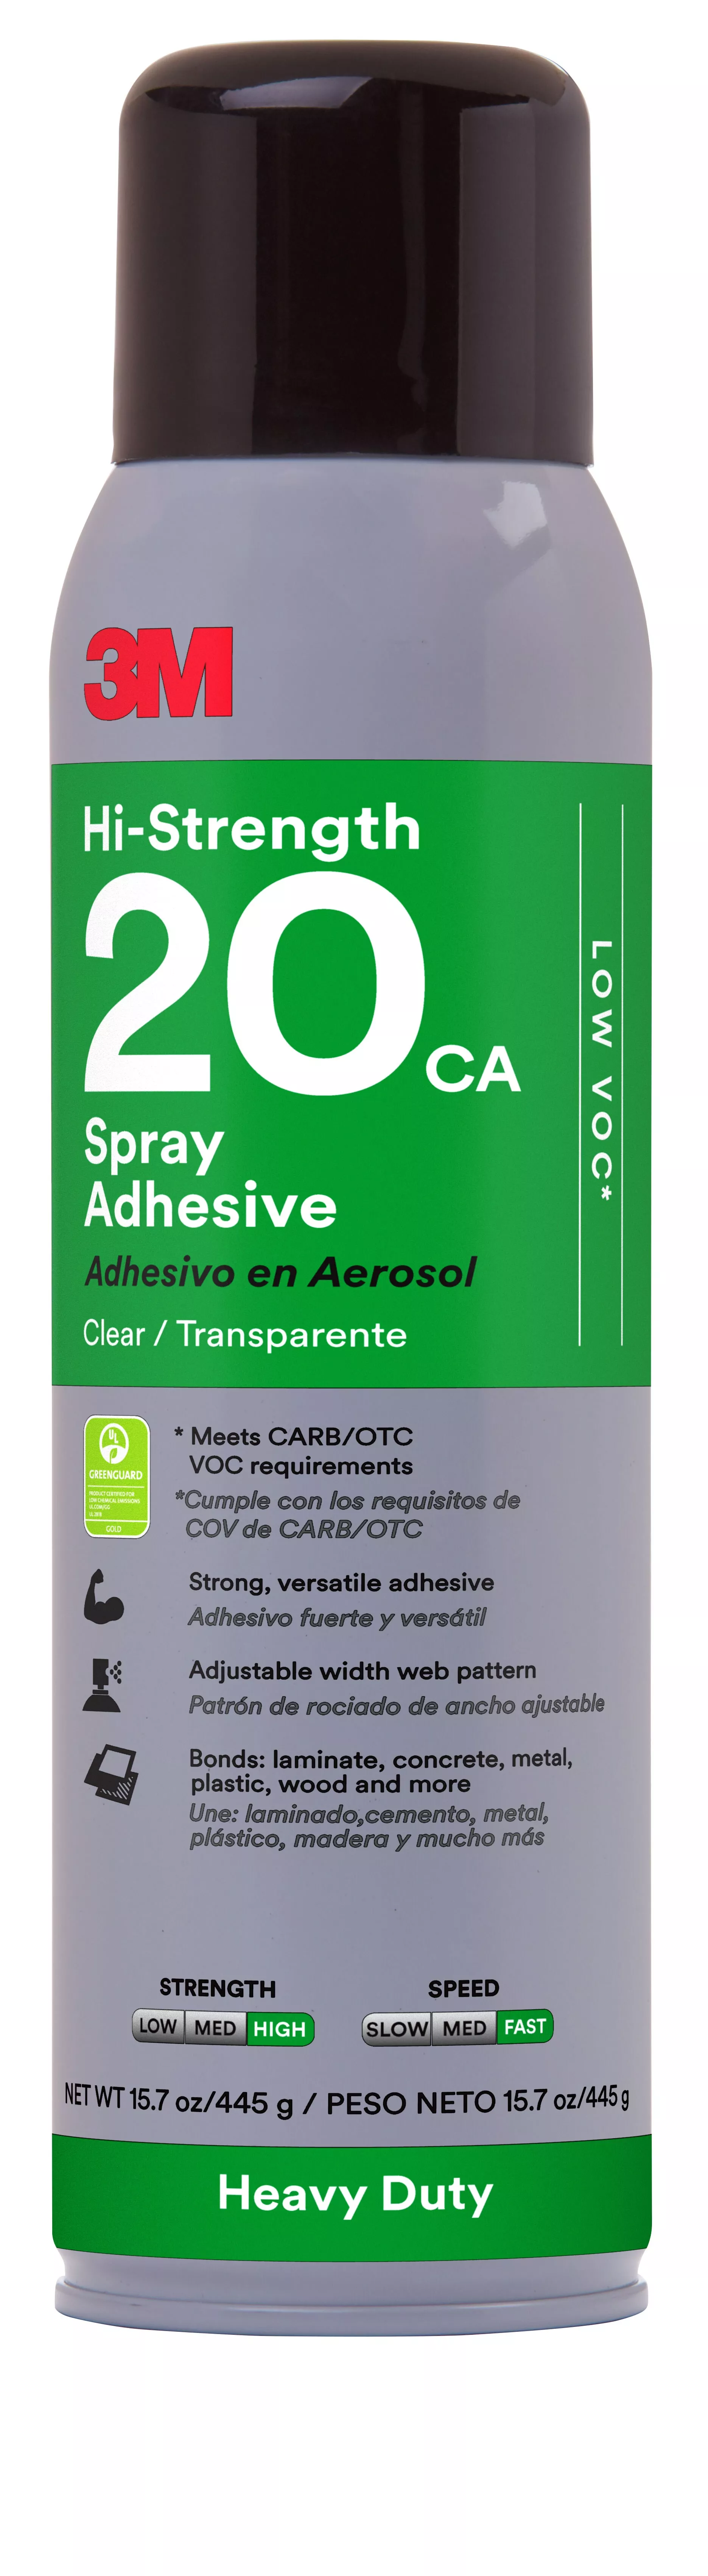 3M™ Heavy Duty Spray Adhesive 20CA, Clear, 16 fl oz Can (Net Wt 15.7
oz), 12/Case